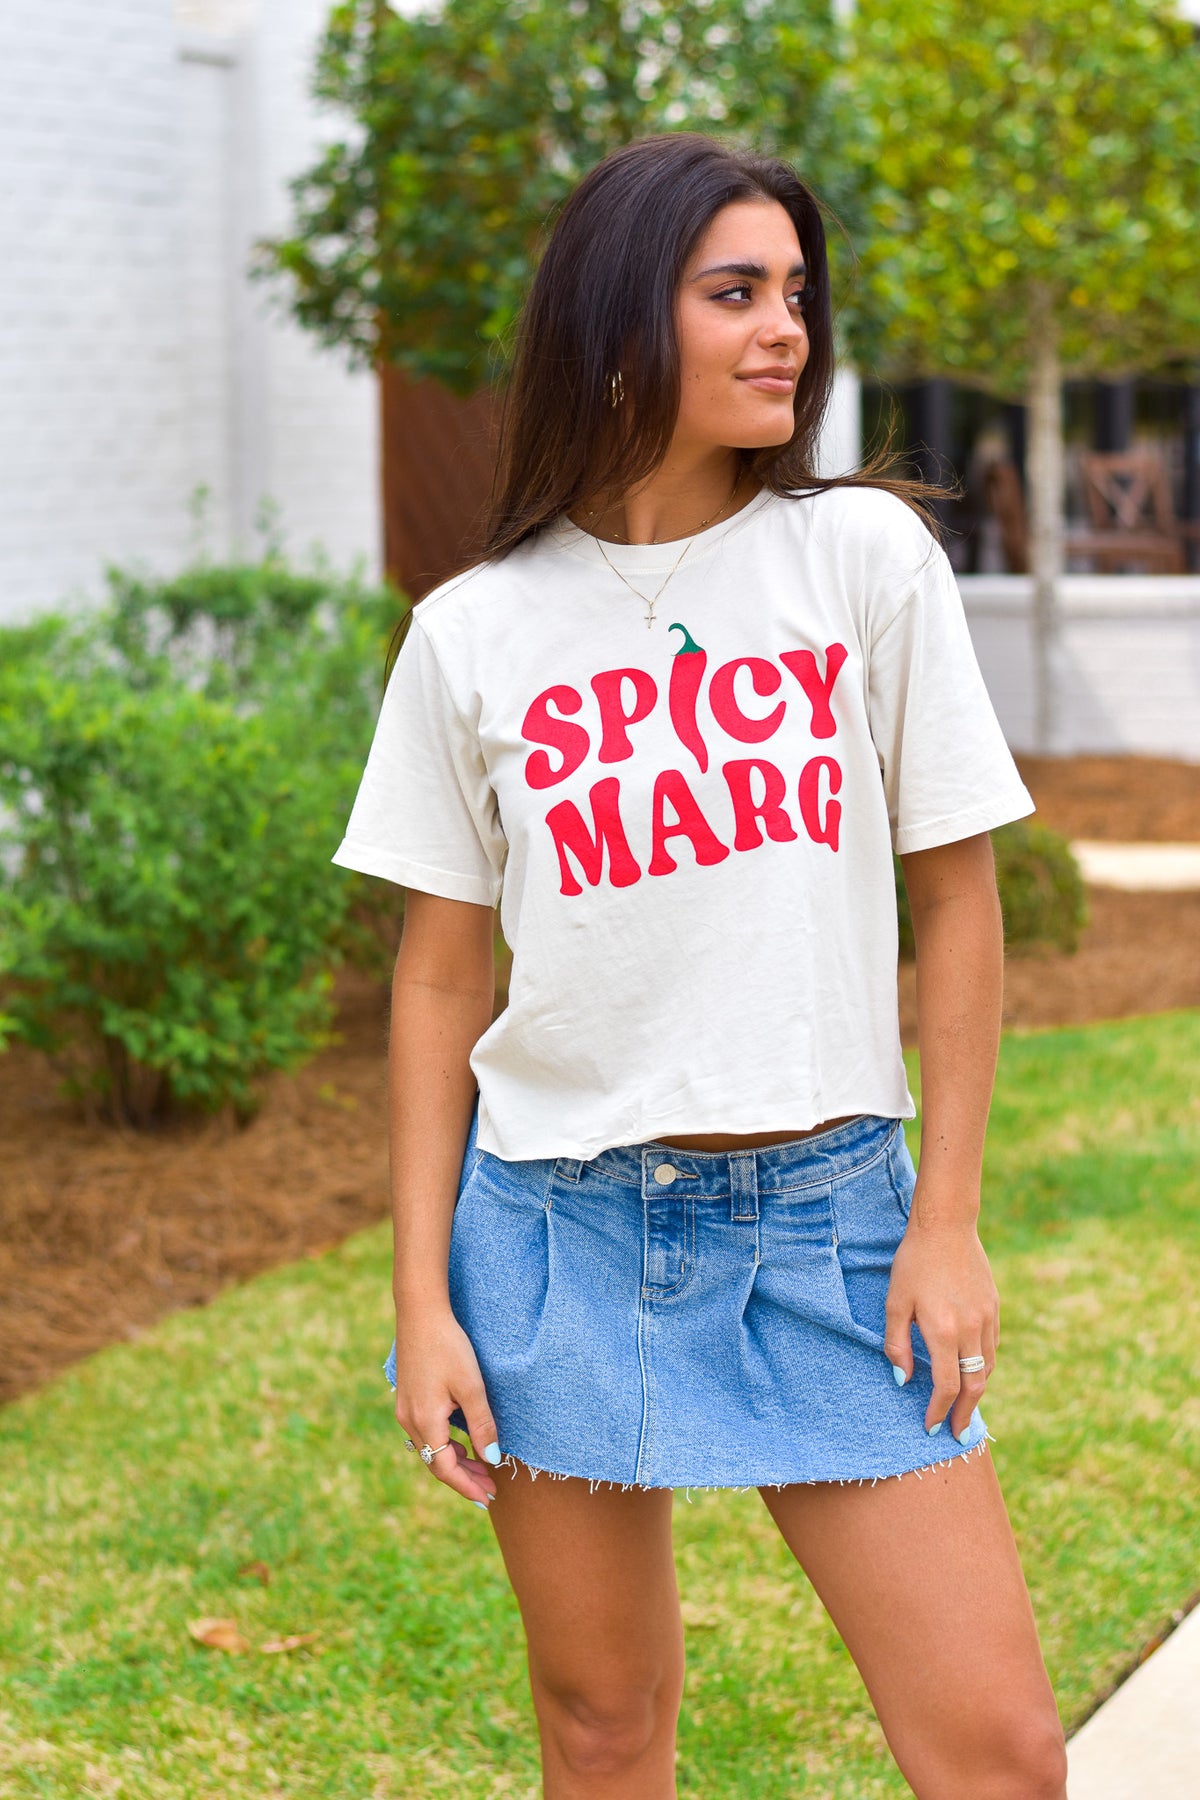 Spicy Marg - Lavish Tuscaloosa